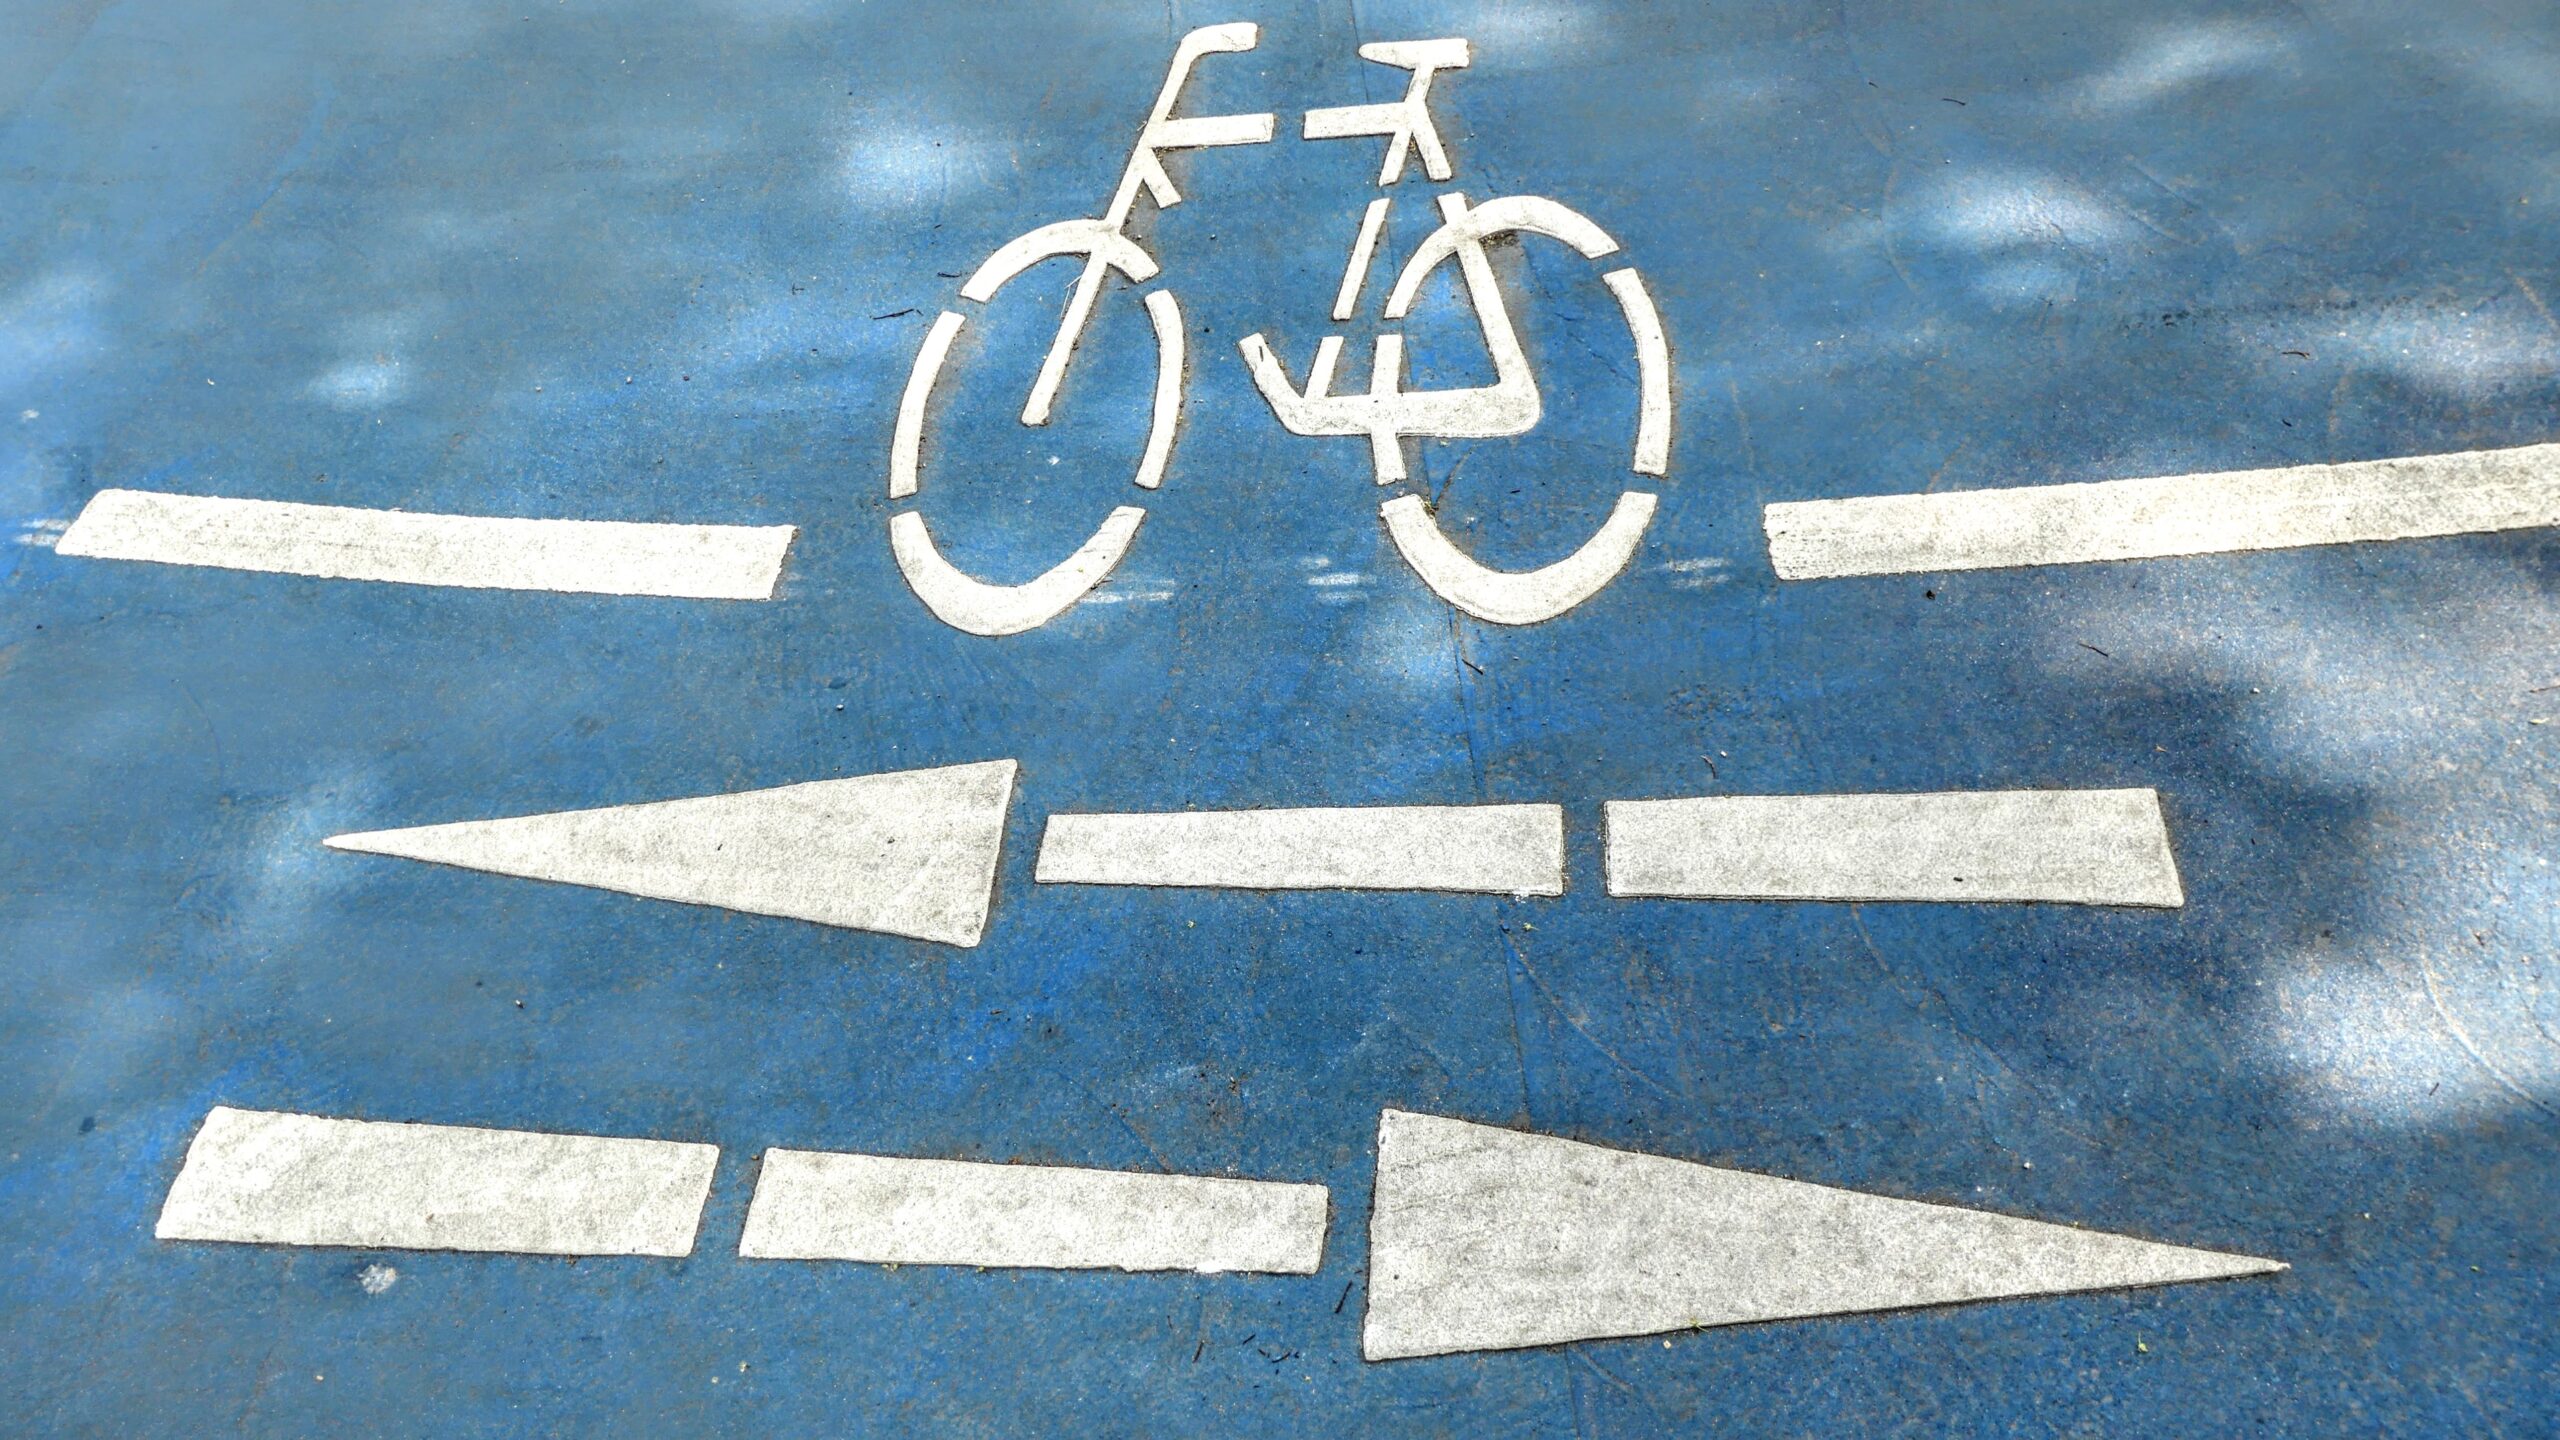 Verkehrsmarkierungen auf einer Straße zeigen ein Fahrrad und Pfeile sowohl nach links als auch nach rechts